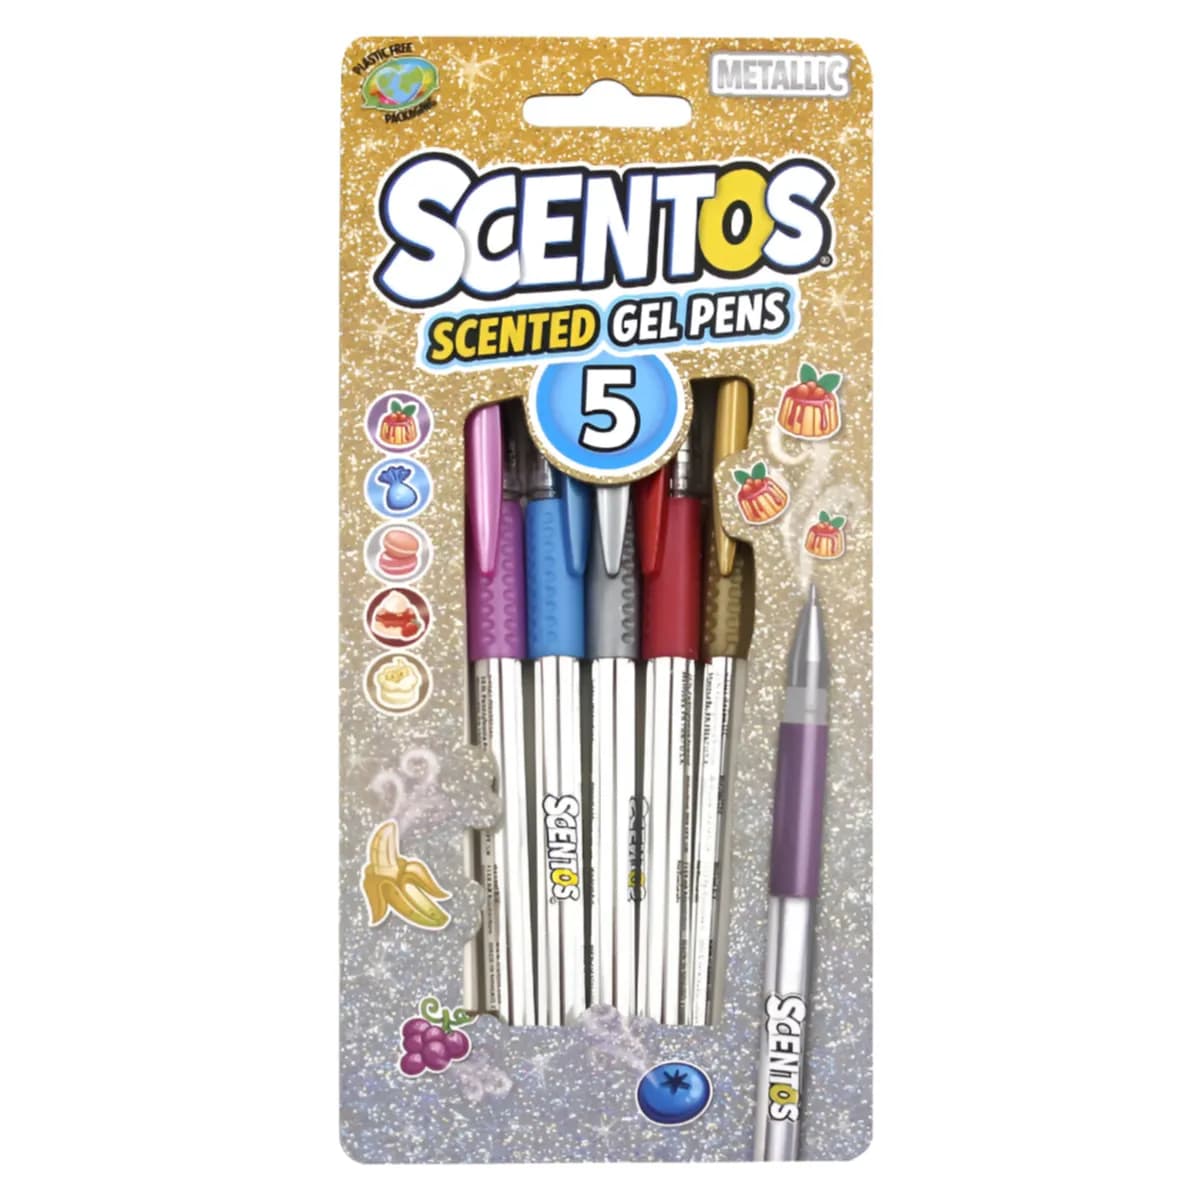 Metallic Scentos Scented Gel Pen - Pack of 5 - (PNFS58)